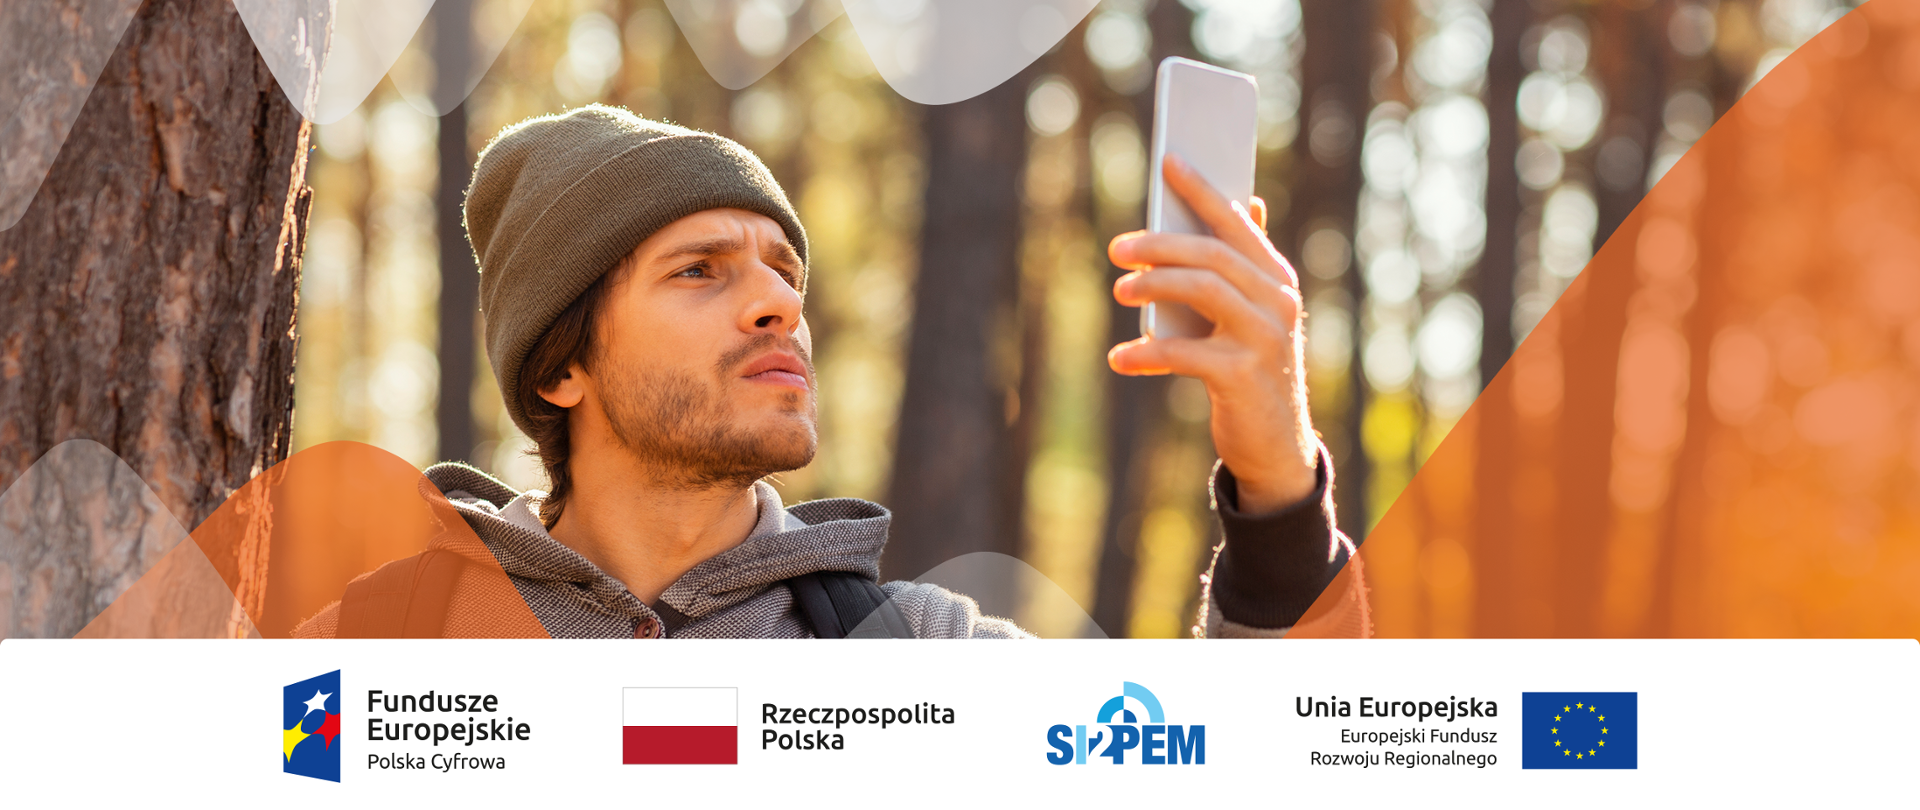 Zdjęcie - mężczyzna w lesie, do góry podnosi rękę, w której trzyma telefon komórkowy, szuka zasięgu.